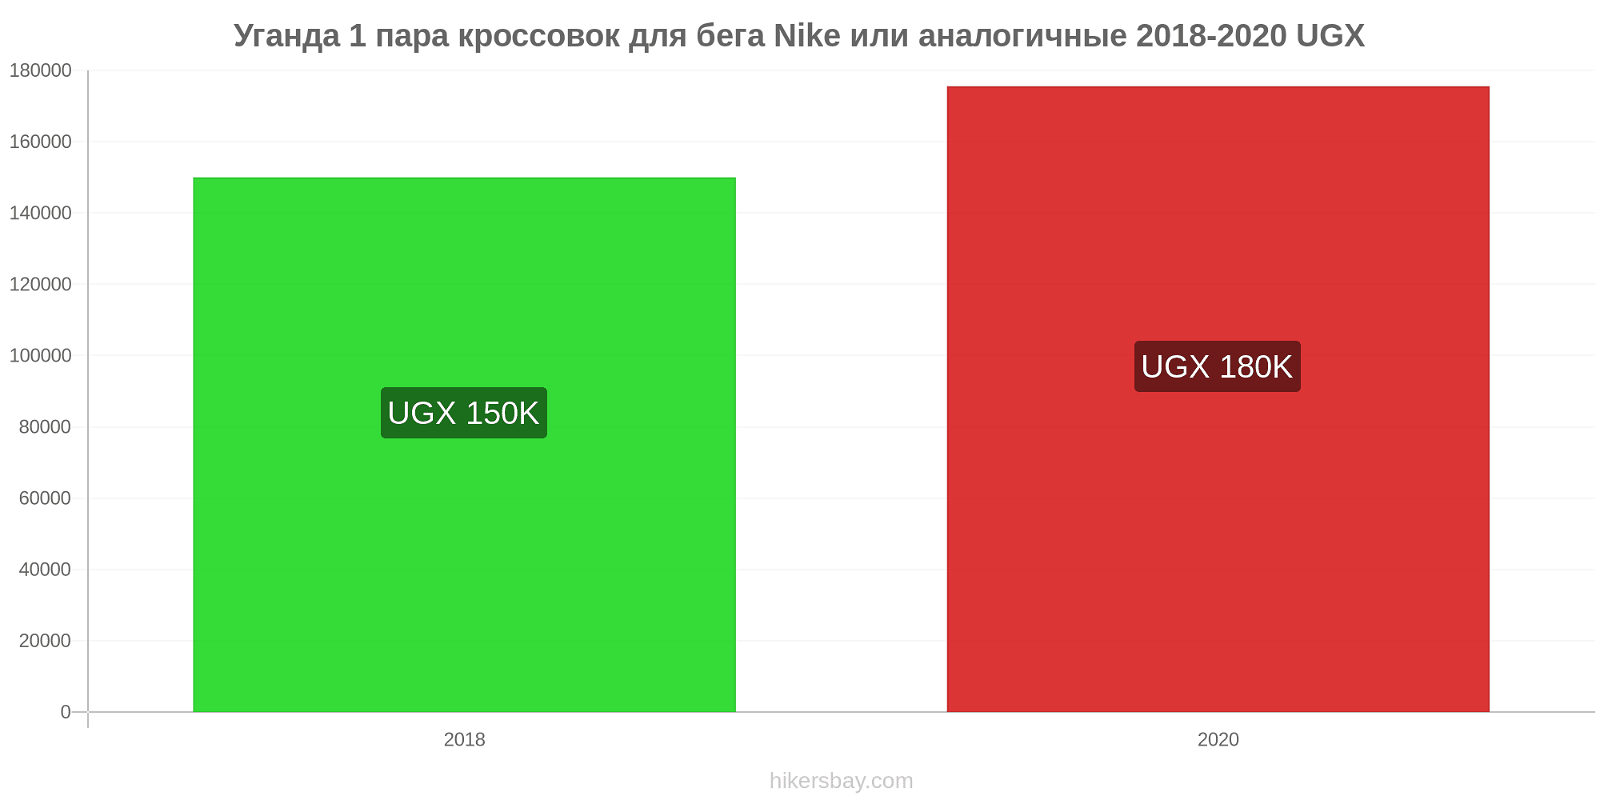 Уганда изменения цен 1 пара кроссовок для бега Nike или аналогичные hikersbay.com